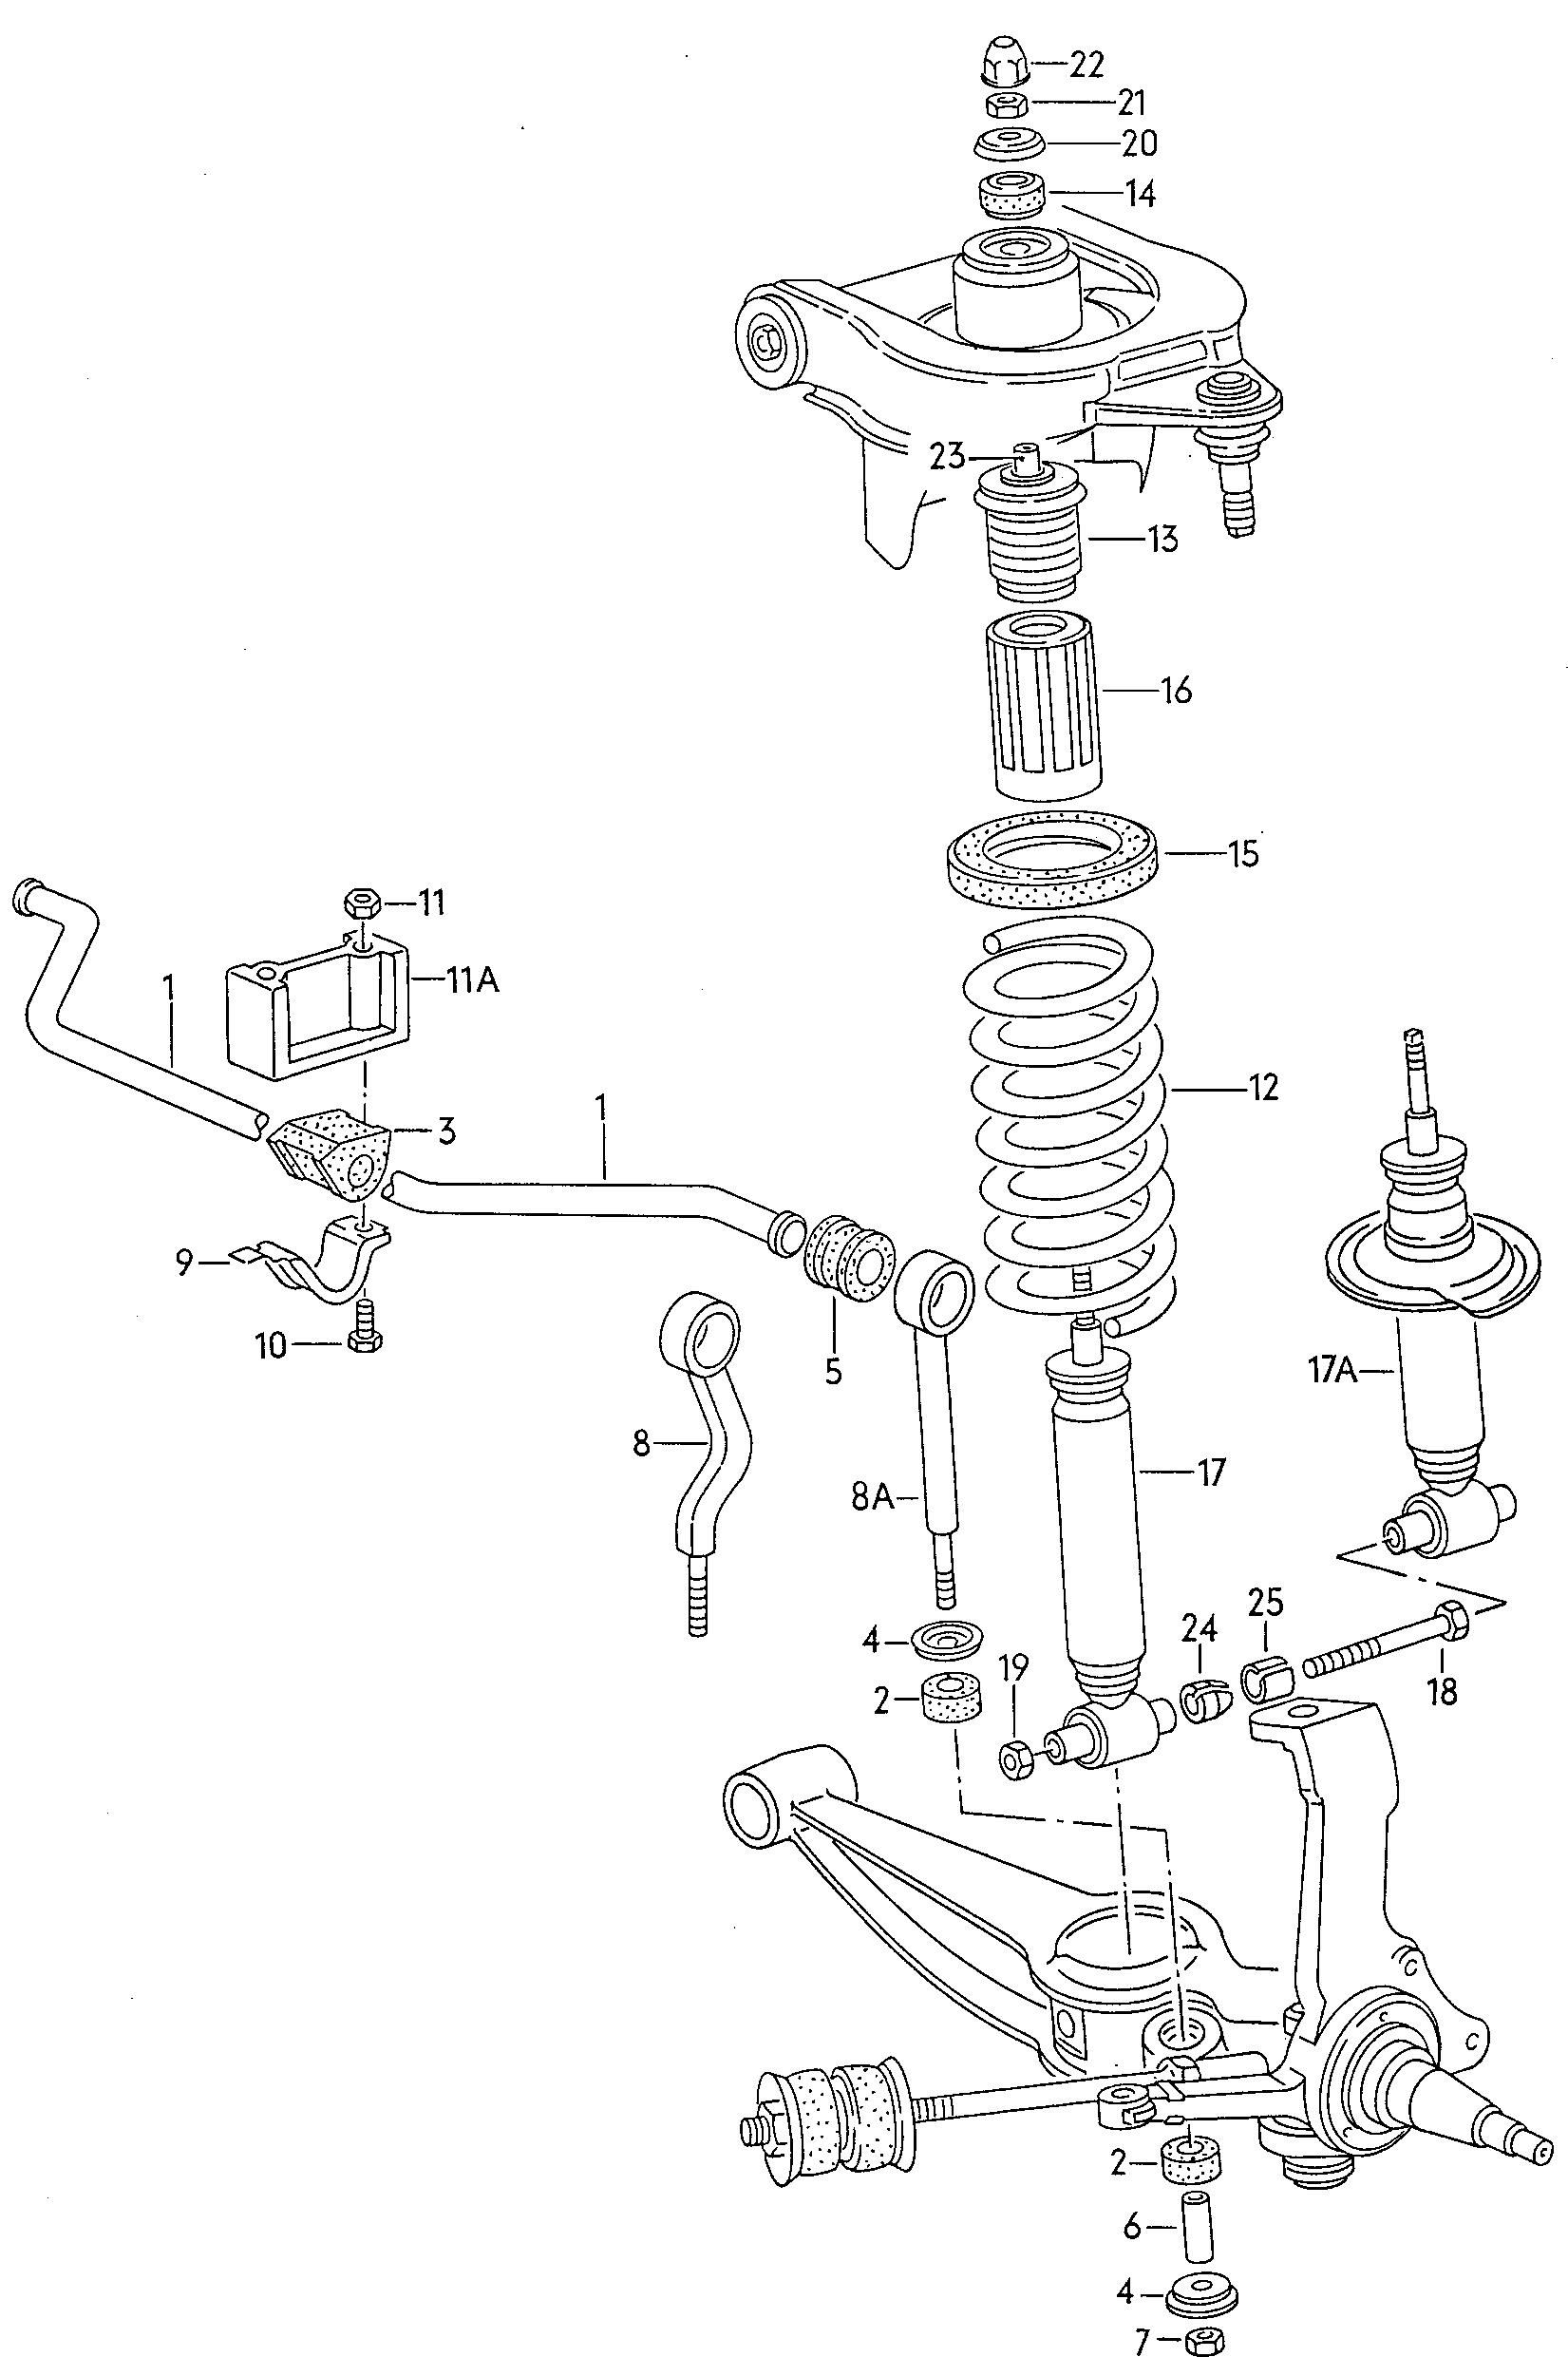 suspensionBarre stabilisatrice av - Typ 2/syncro - t2